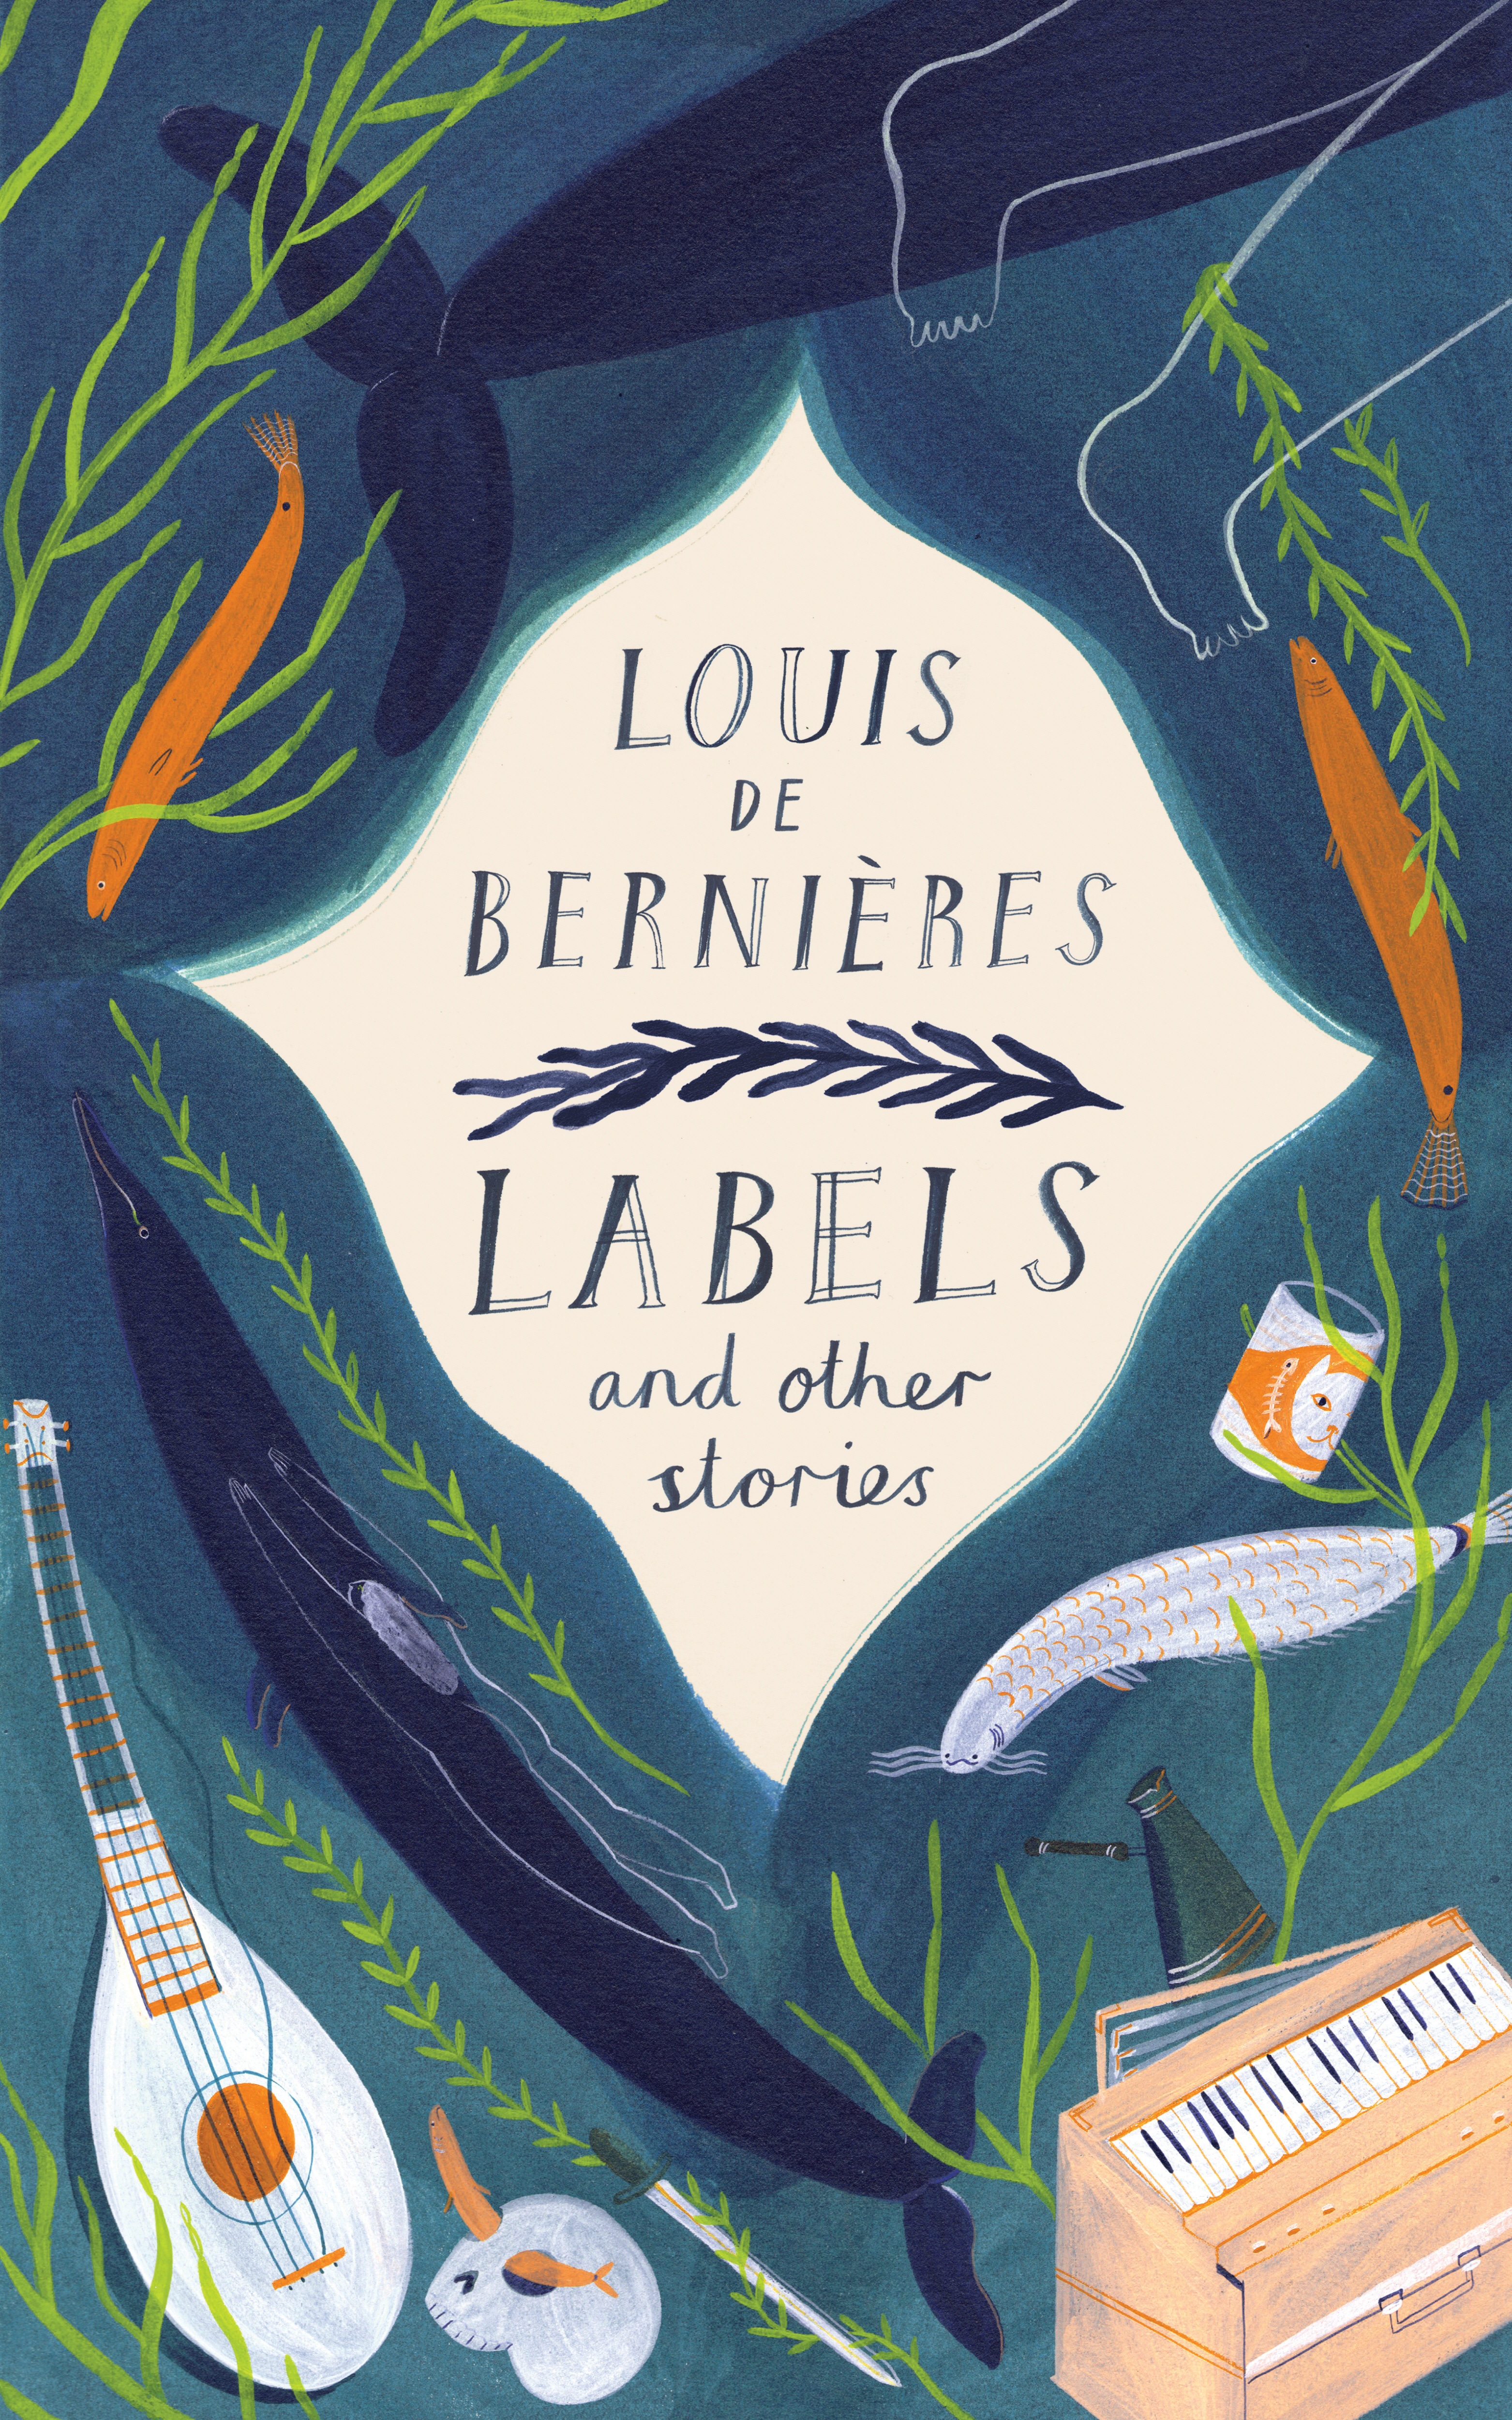 Book “Labels and Other Stories” by Louis de Bernières — April 11, 2019